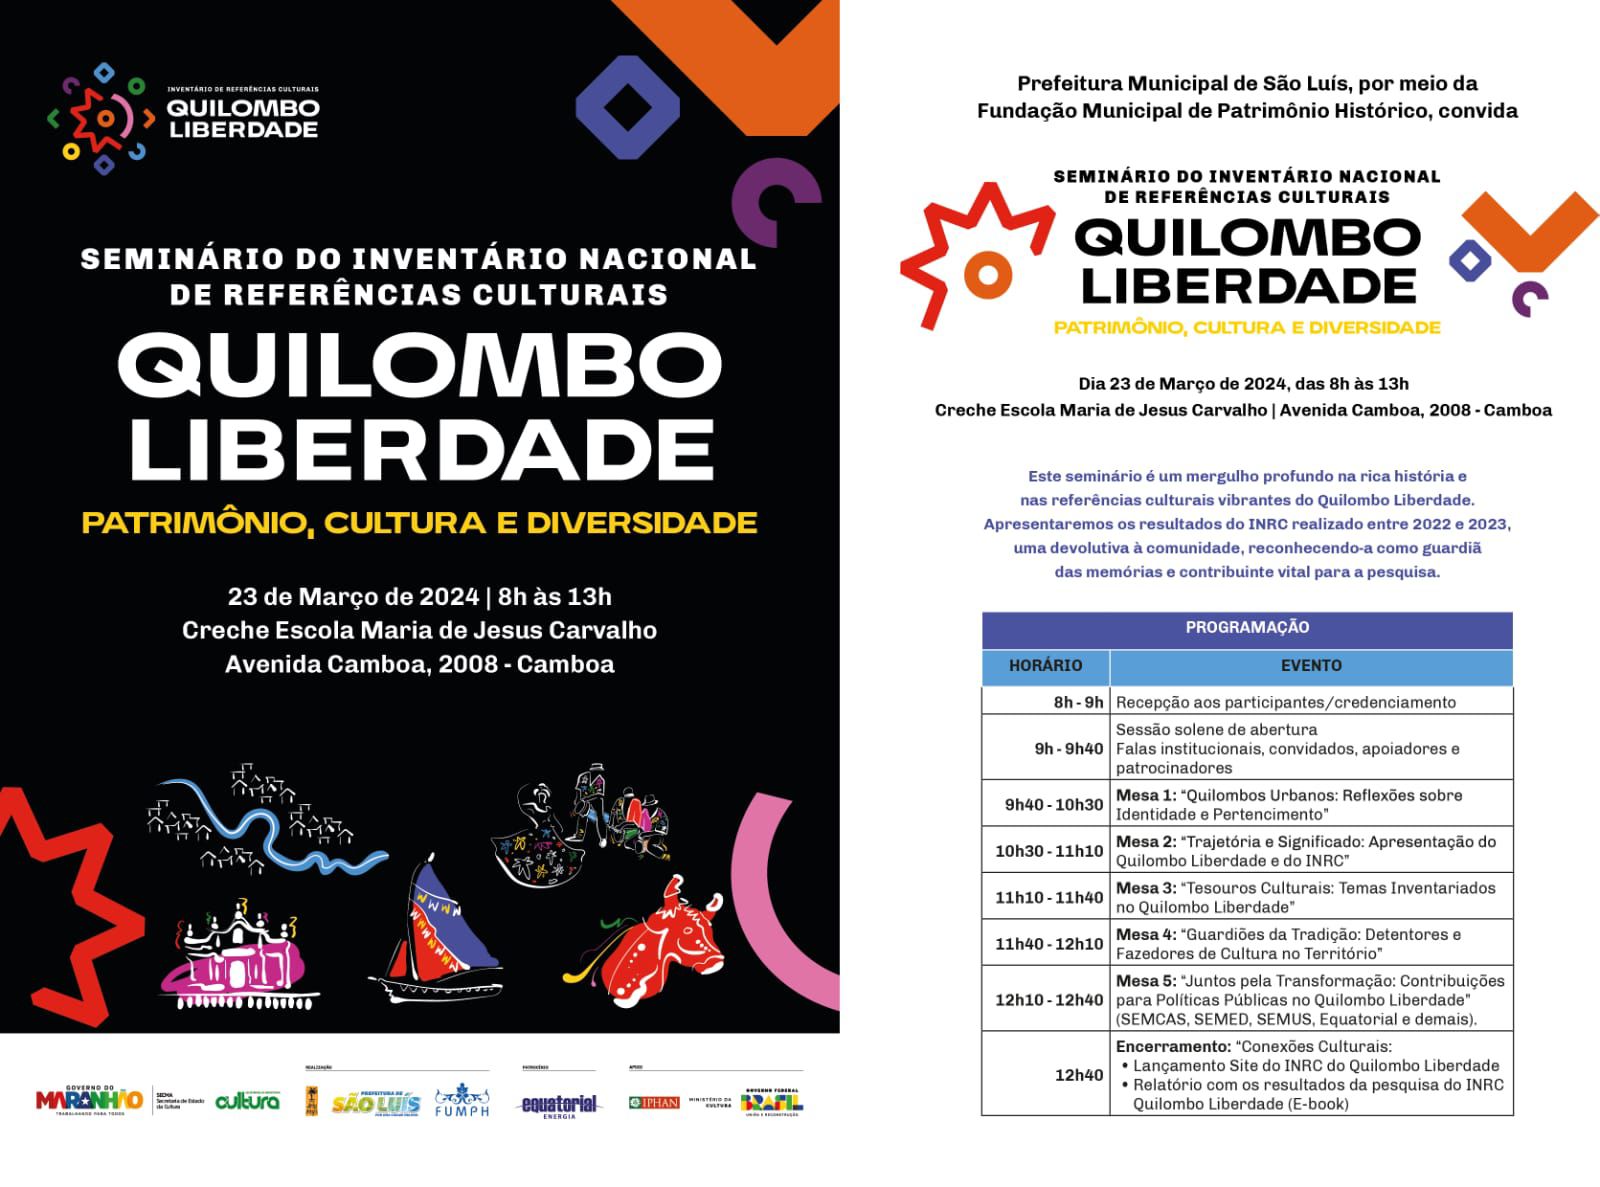 Prefeitura de São Luís promove seminário para celebrar o patrimônio cultural do Quilombo Urbano Liberdade